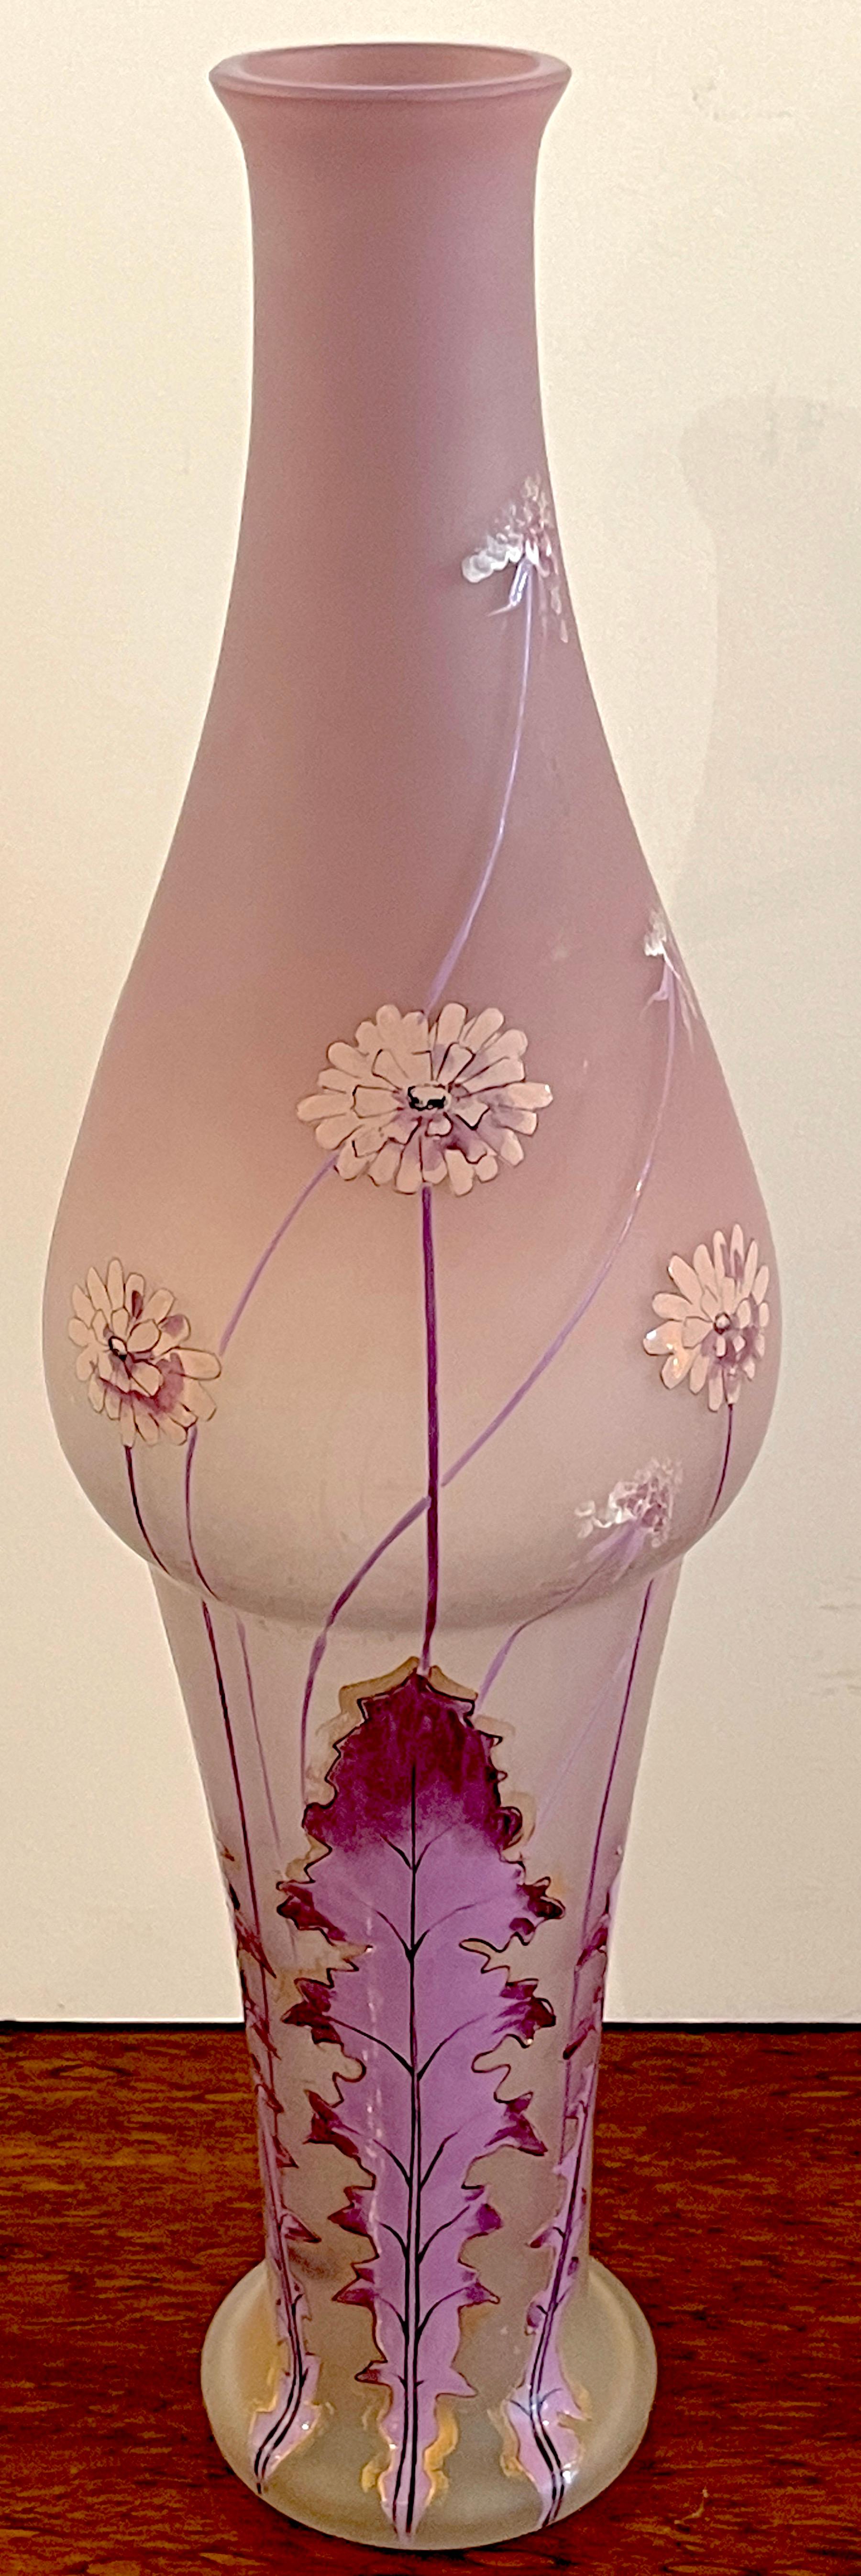 Art Nouveau Lavendel Löwenzahn (Taraxacum) emaillierte Vase, 
Wird der Glashütte Mont Joye zugeschrieben 
Frankreich, circa 1900
Eine einzigartige Arbeit mit dem länglichen Hals und dem bauchigen Körper, der auf einem sich verjüngenden Sockel